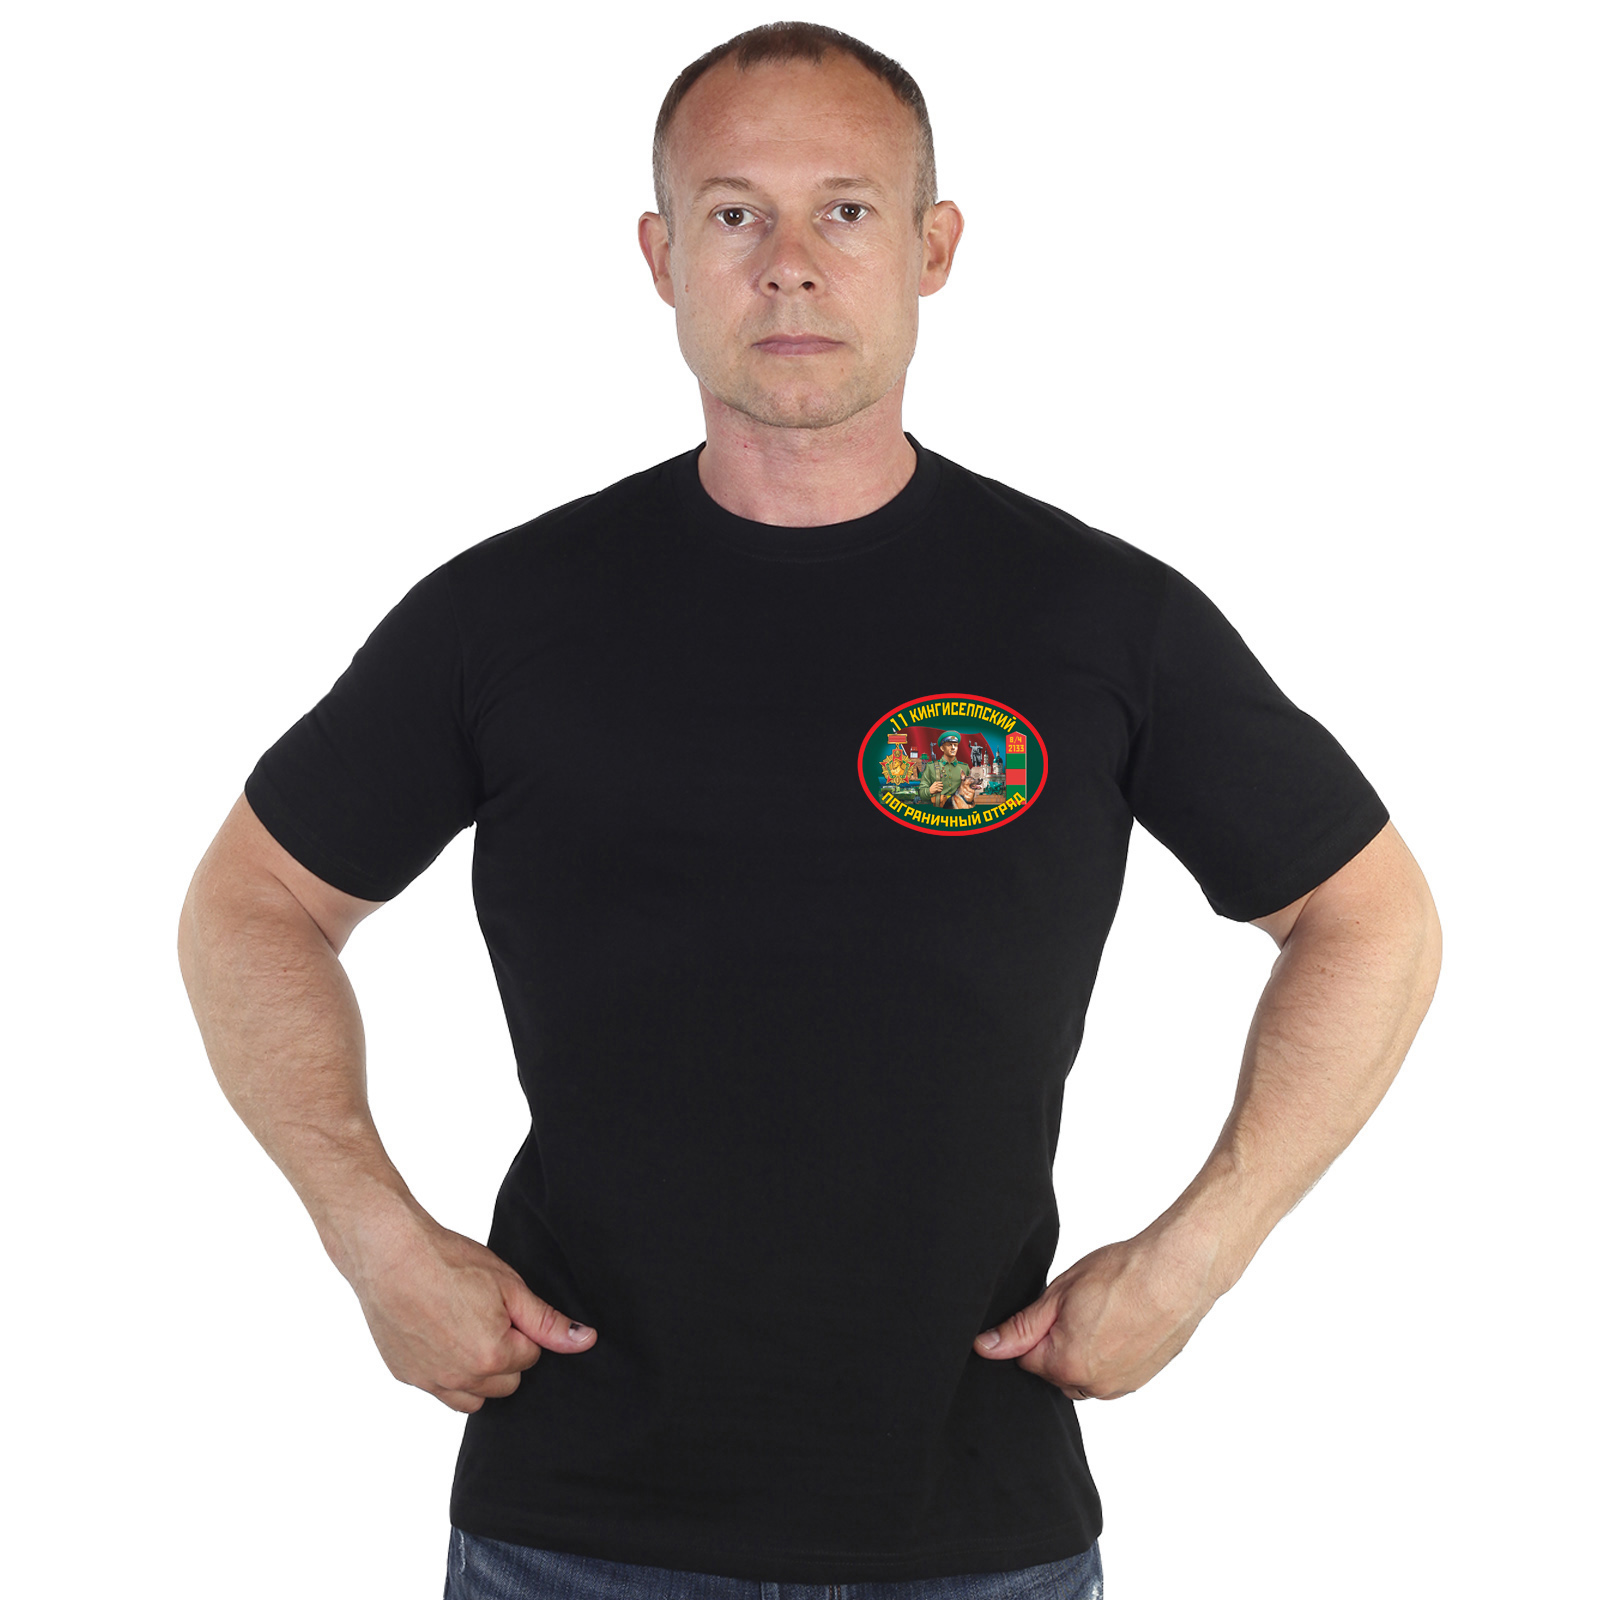 Мужская черная футболка 11 Кингисеппский пограничный отряд